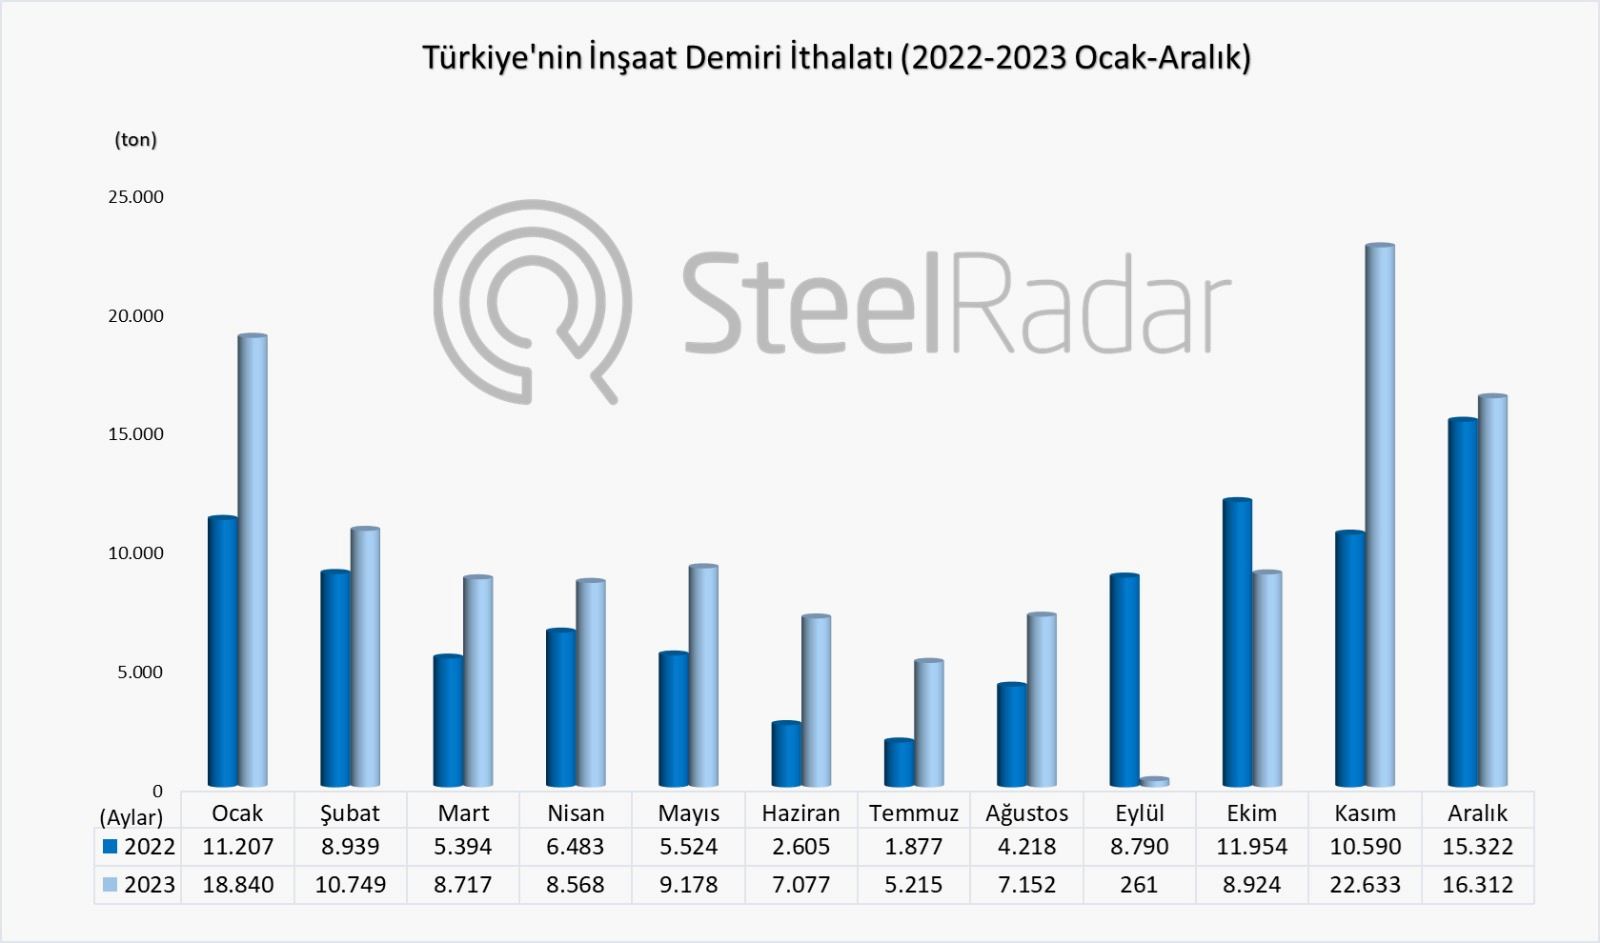 Türkiye’nin inşaat demiri ithalatı 2023 yılında %33,7 arttı